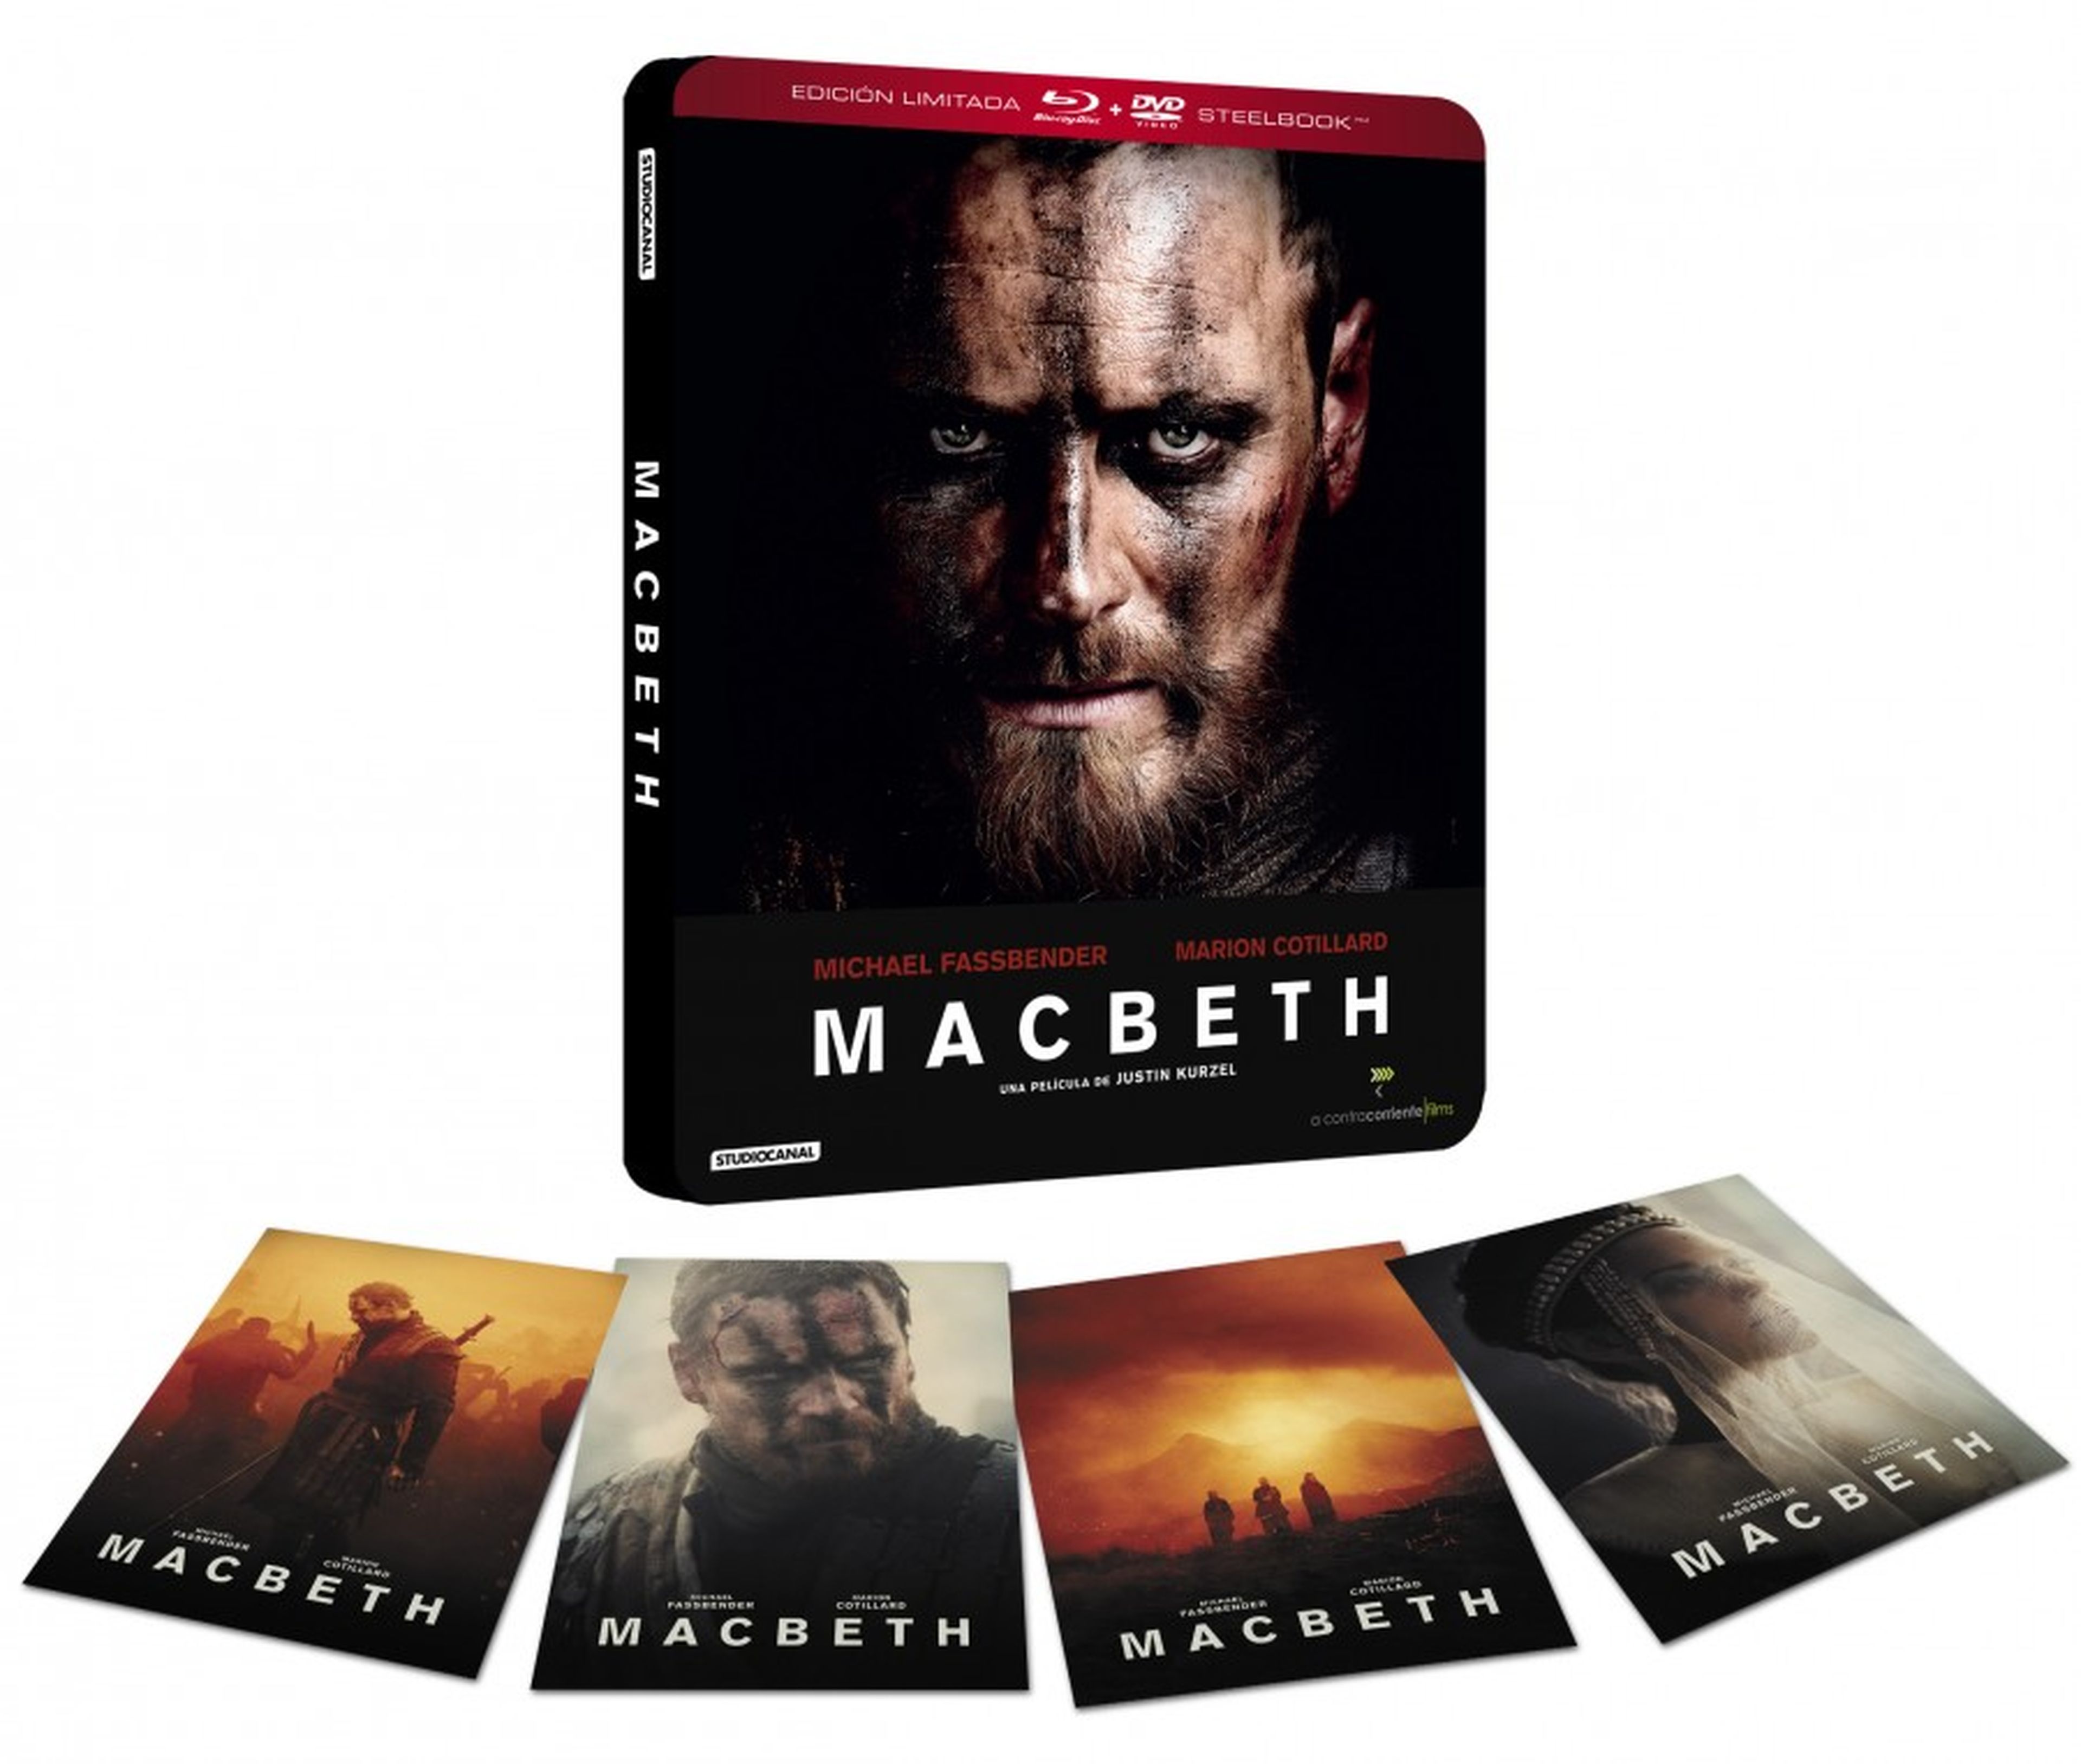 Macbeth - Contenidos extra de la edición limitada Steelbook